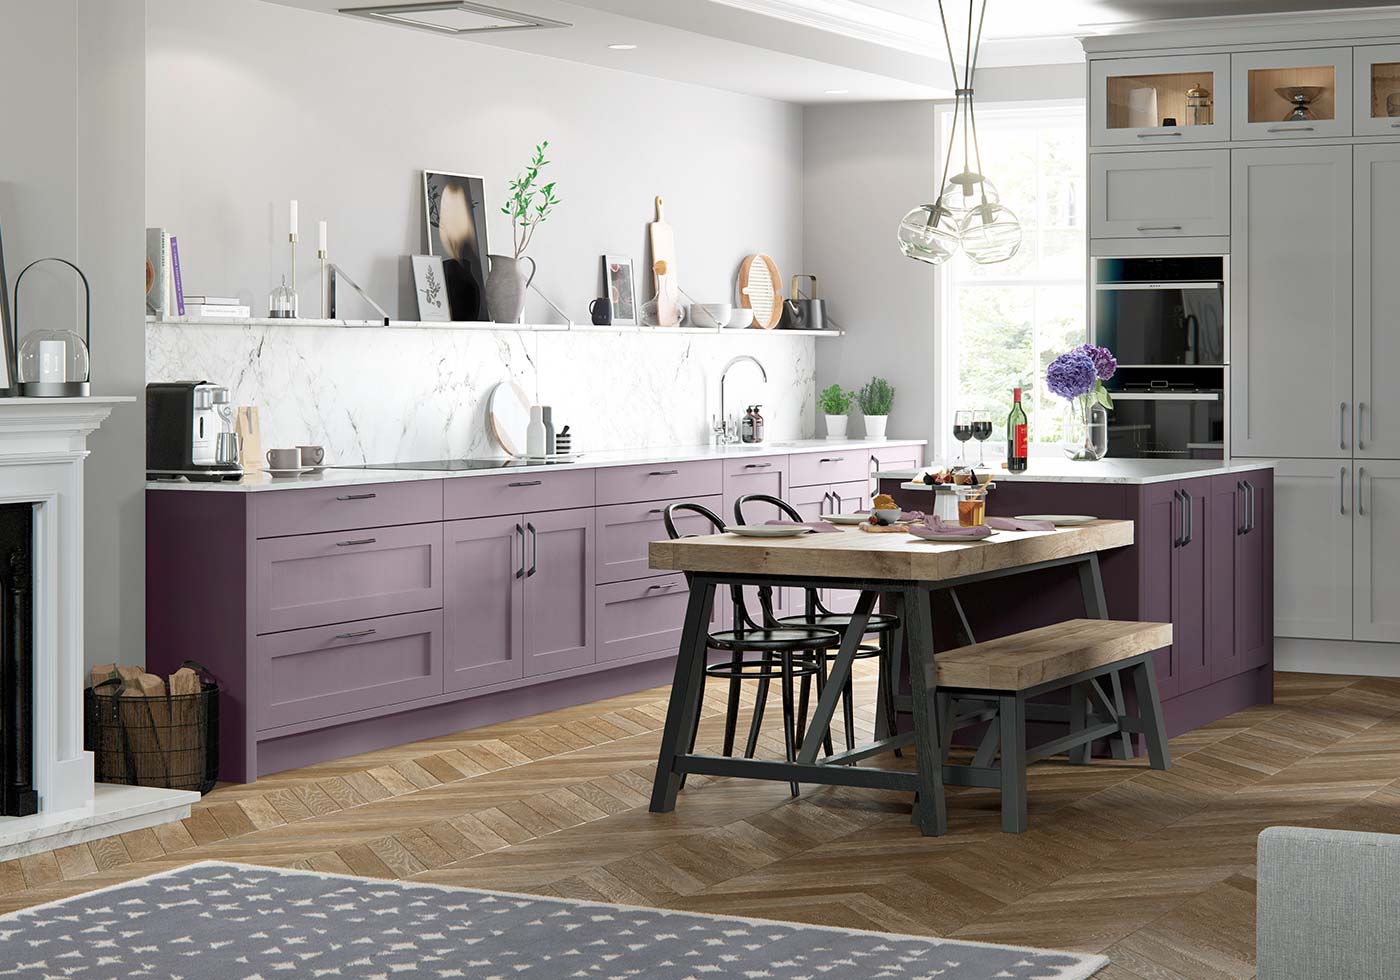 modern purple kitchen design